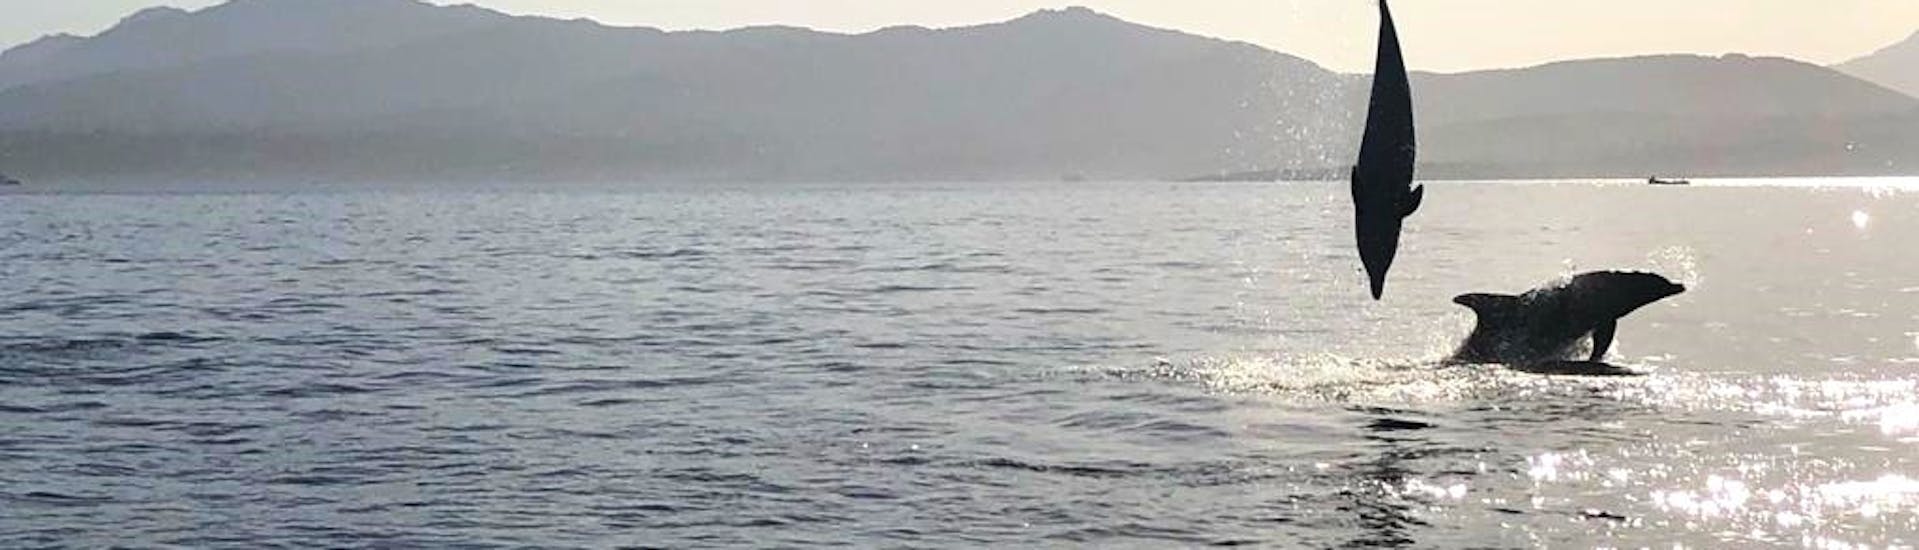 Delphine springen im Meer während der RIB-Bootstour im Golfo Aranci mit Delphinbeobachtung